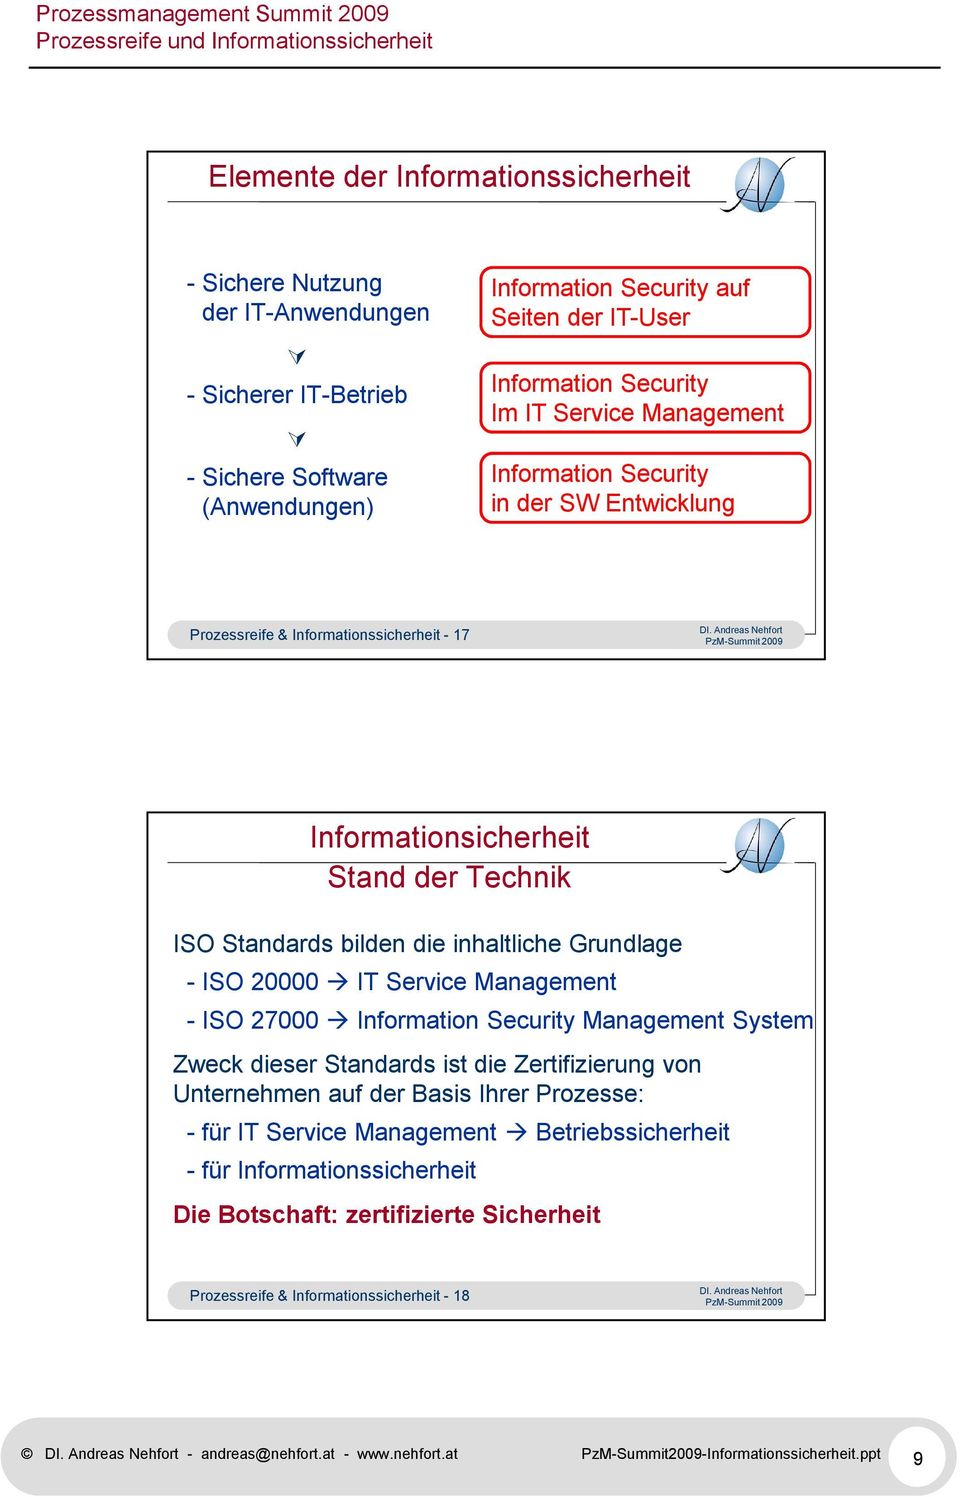 20000 IT Service Management - ISO 27000 Information Security Management System Zweck dieser Standards ist die Zertifizierung von Unternehmen auf der Basis Ihrer Prozesse: - für IT Service Management